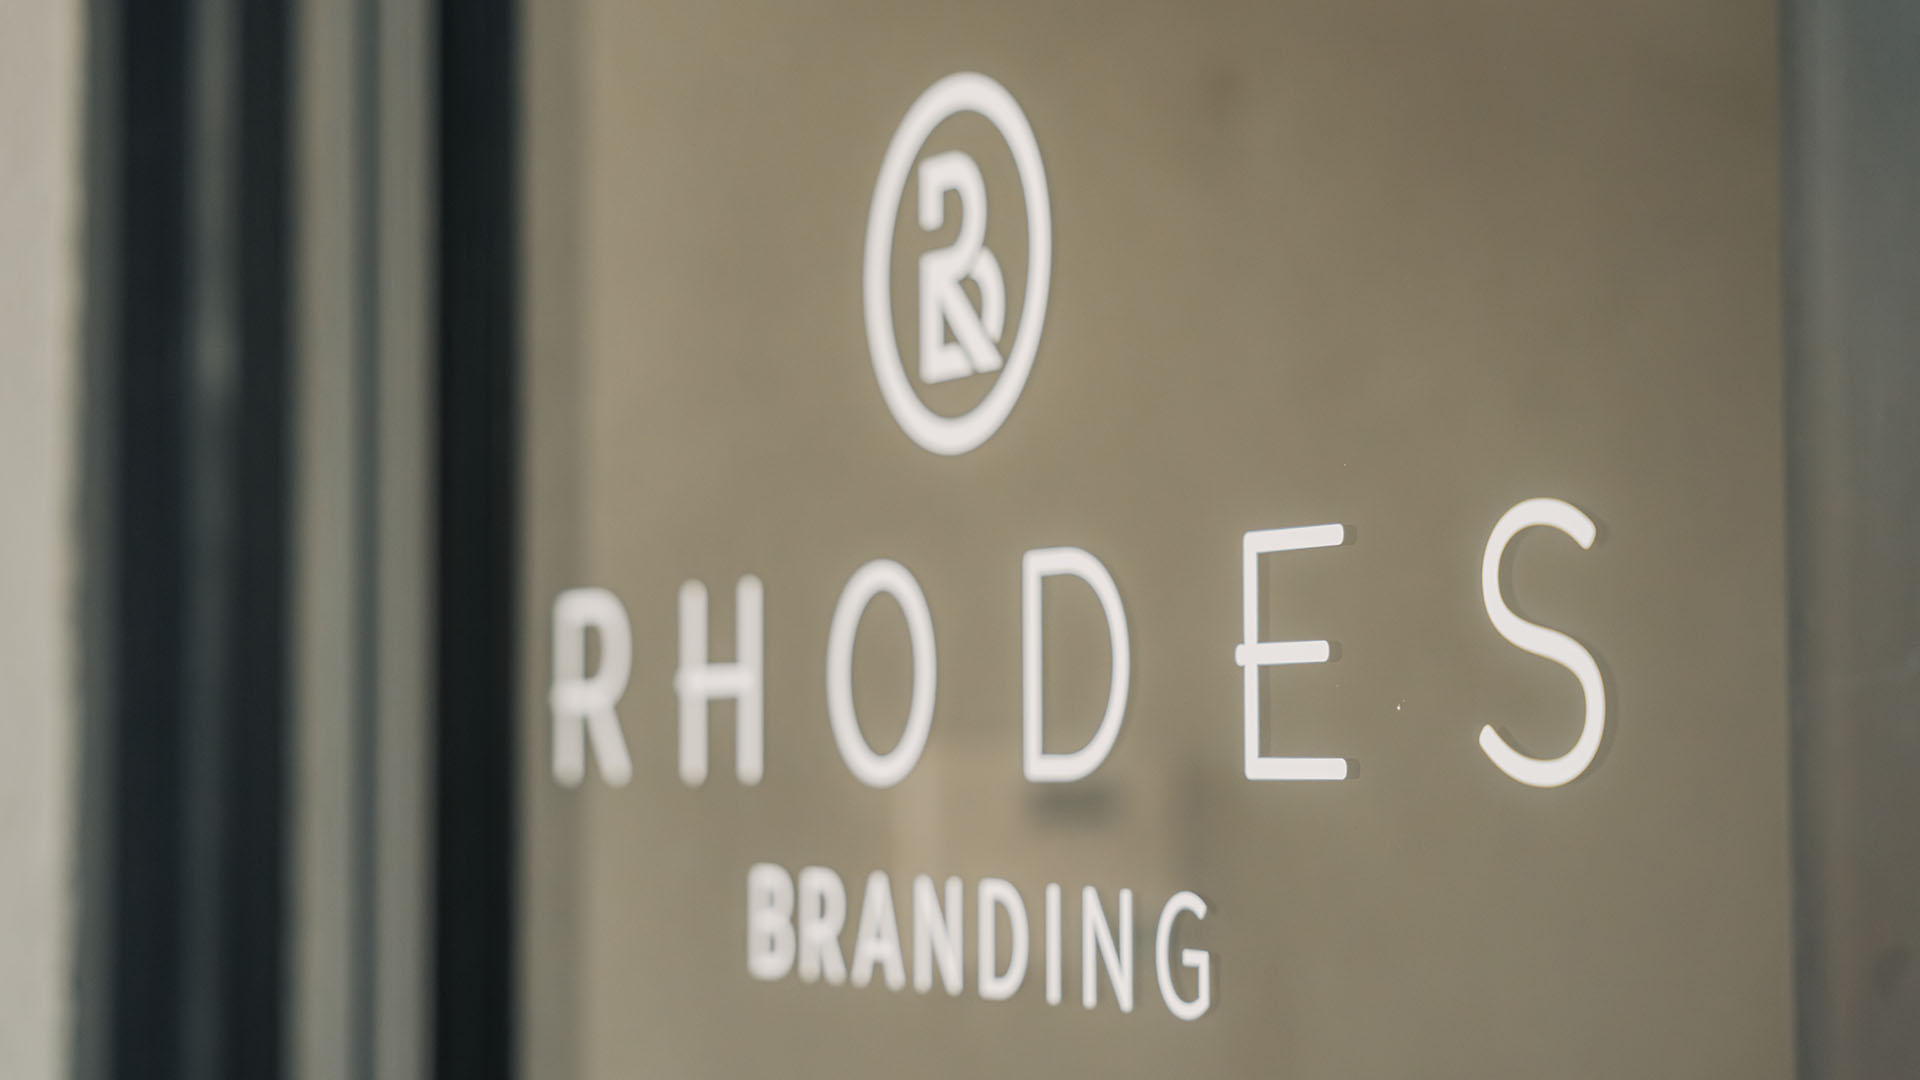 Rhodes Branding office door